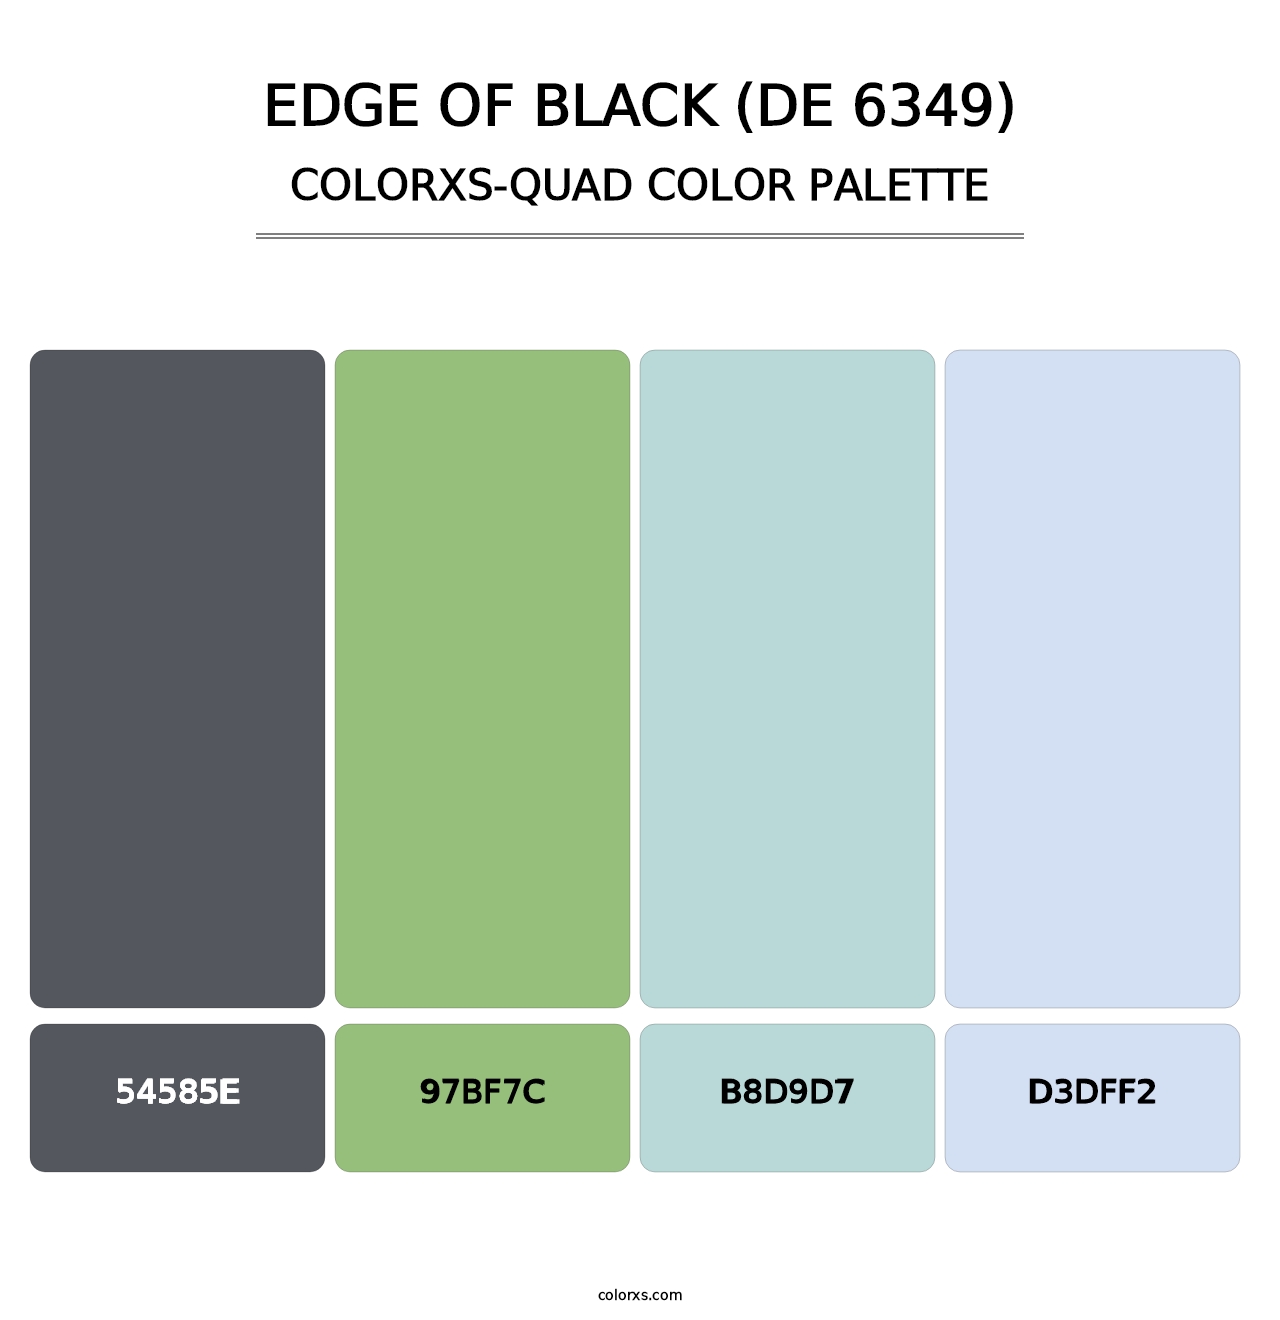 Edge of Black (DE 6349) - Colorxs Quad Palette